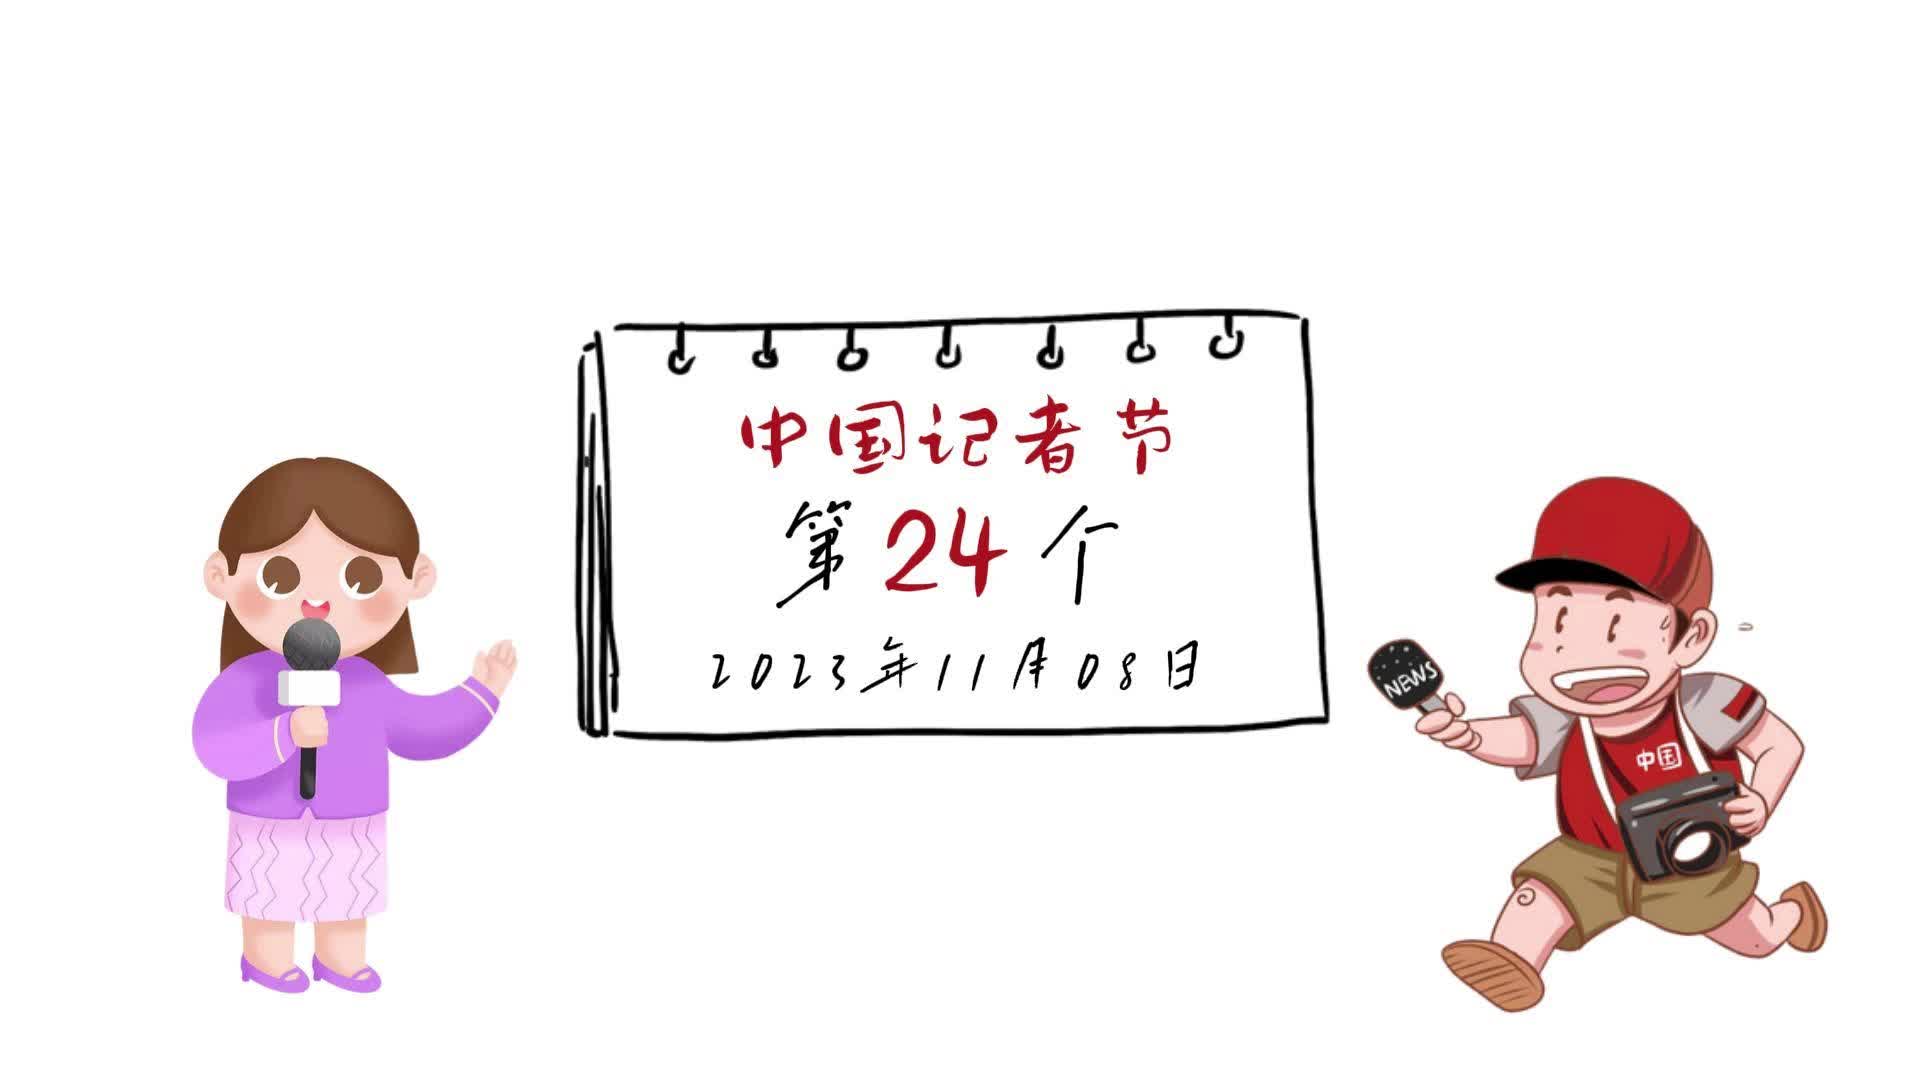 【邹视频·新闻】115秒 | 心怀热爱  逐梦前行 致敬第24个中国记者节